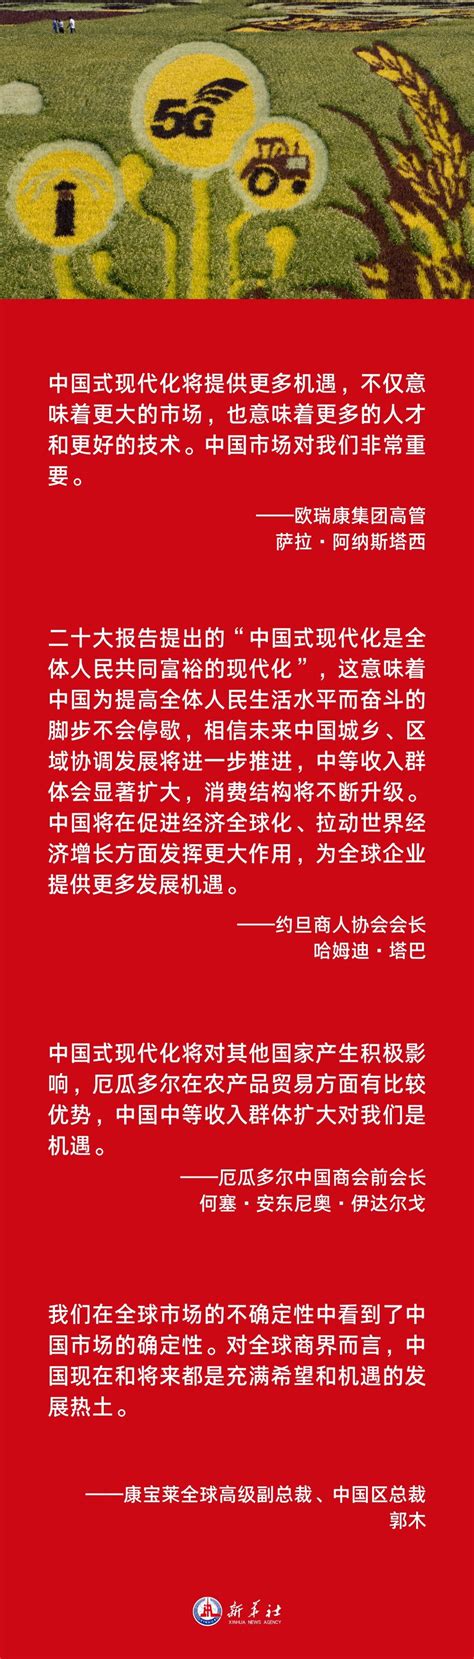 海报 | 中国式现代化是世界机遇